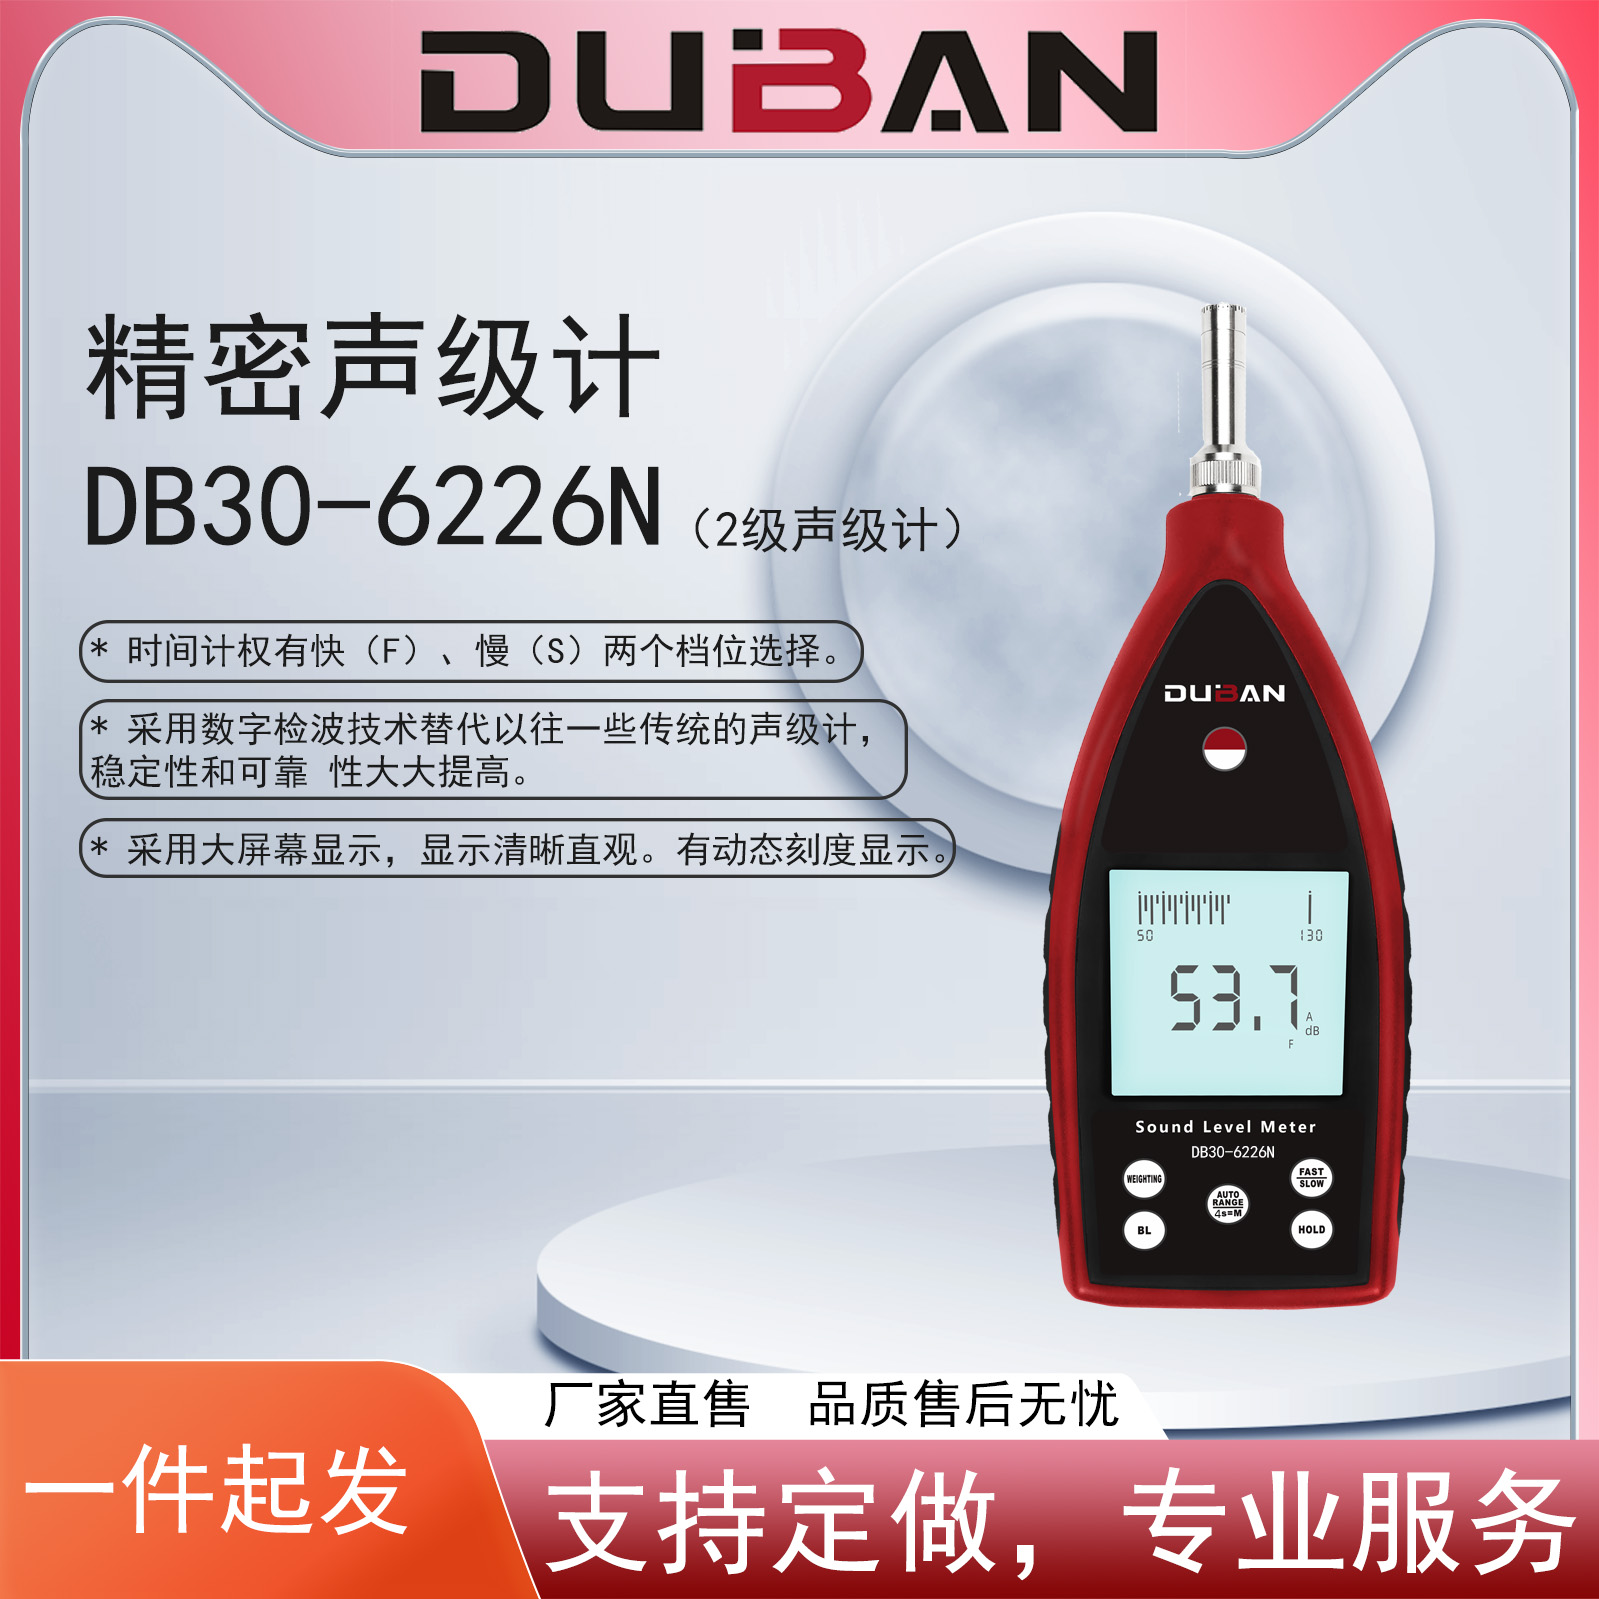 精密声级计 DB30-6226N厂家，精密声级计 DB30-6226N报价，精密声级计 DB30-6226N批发图片